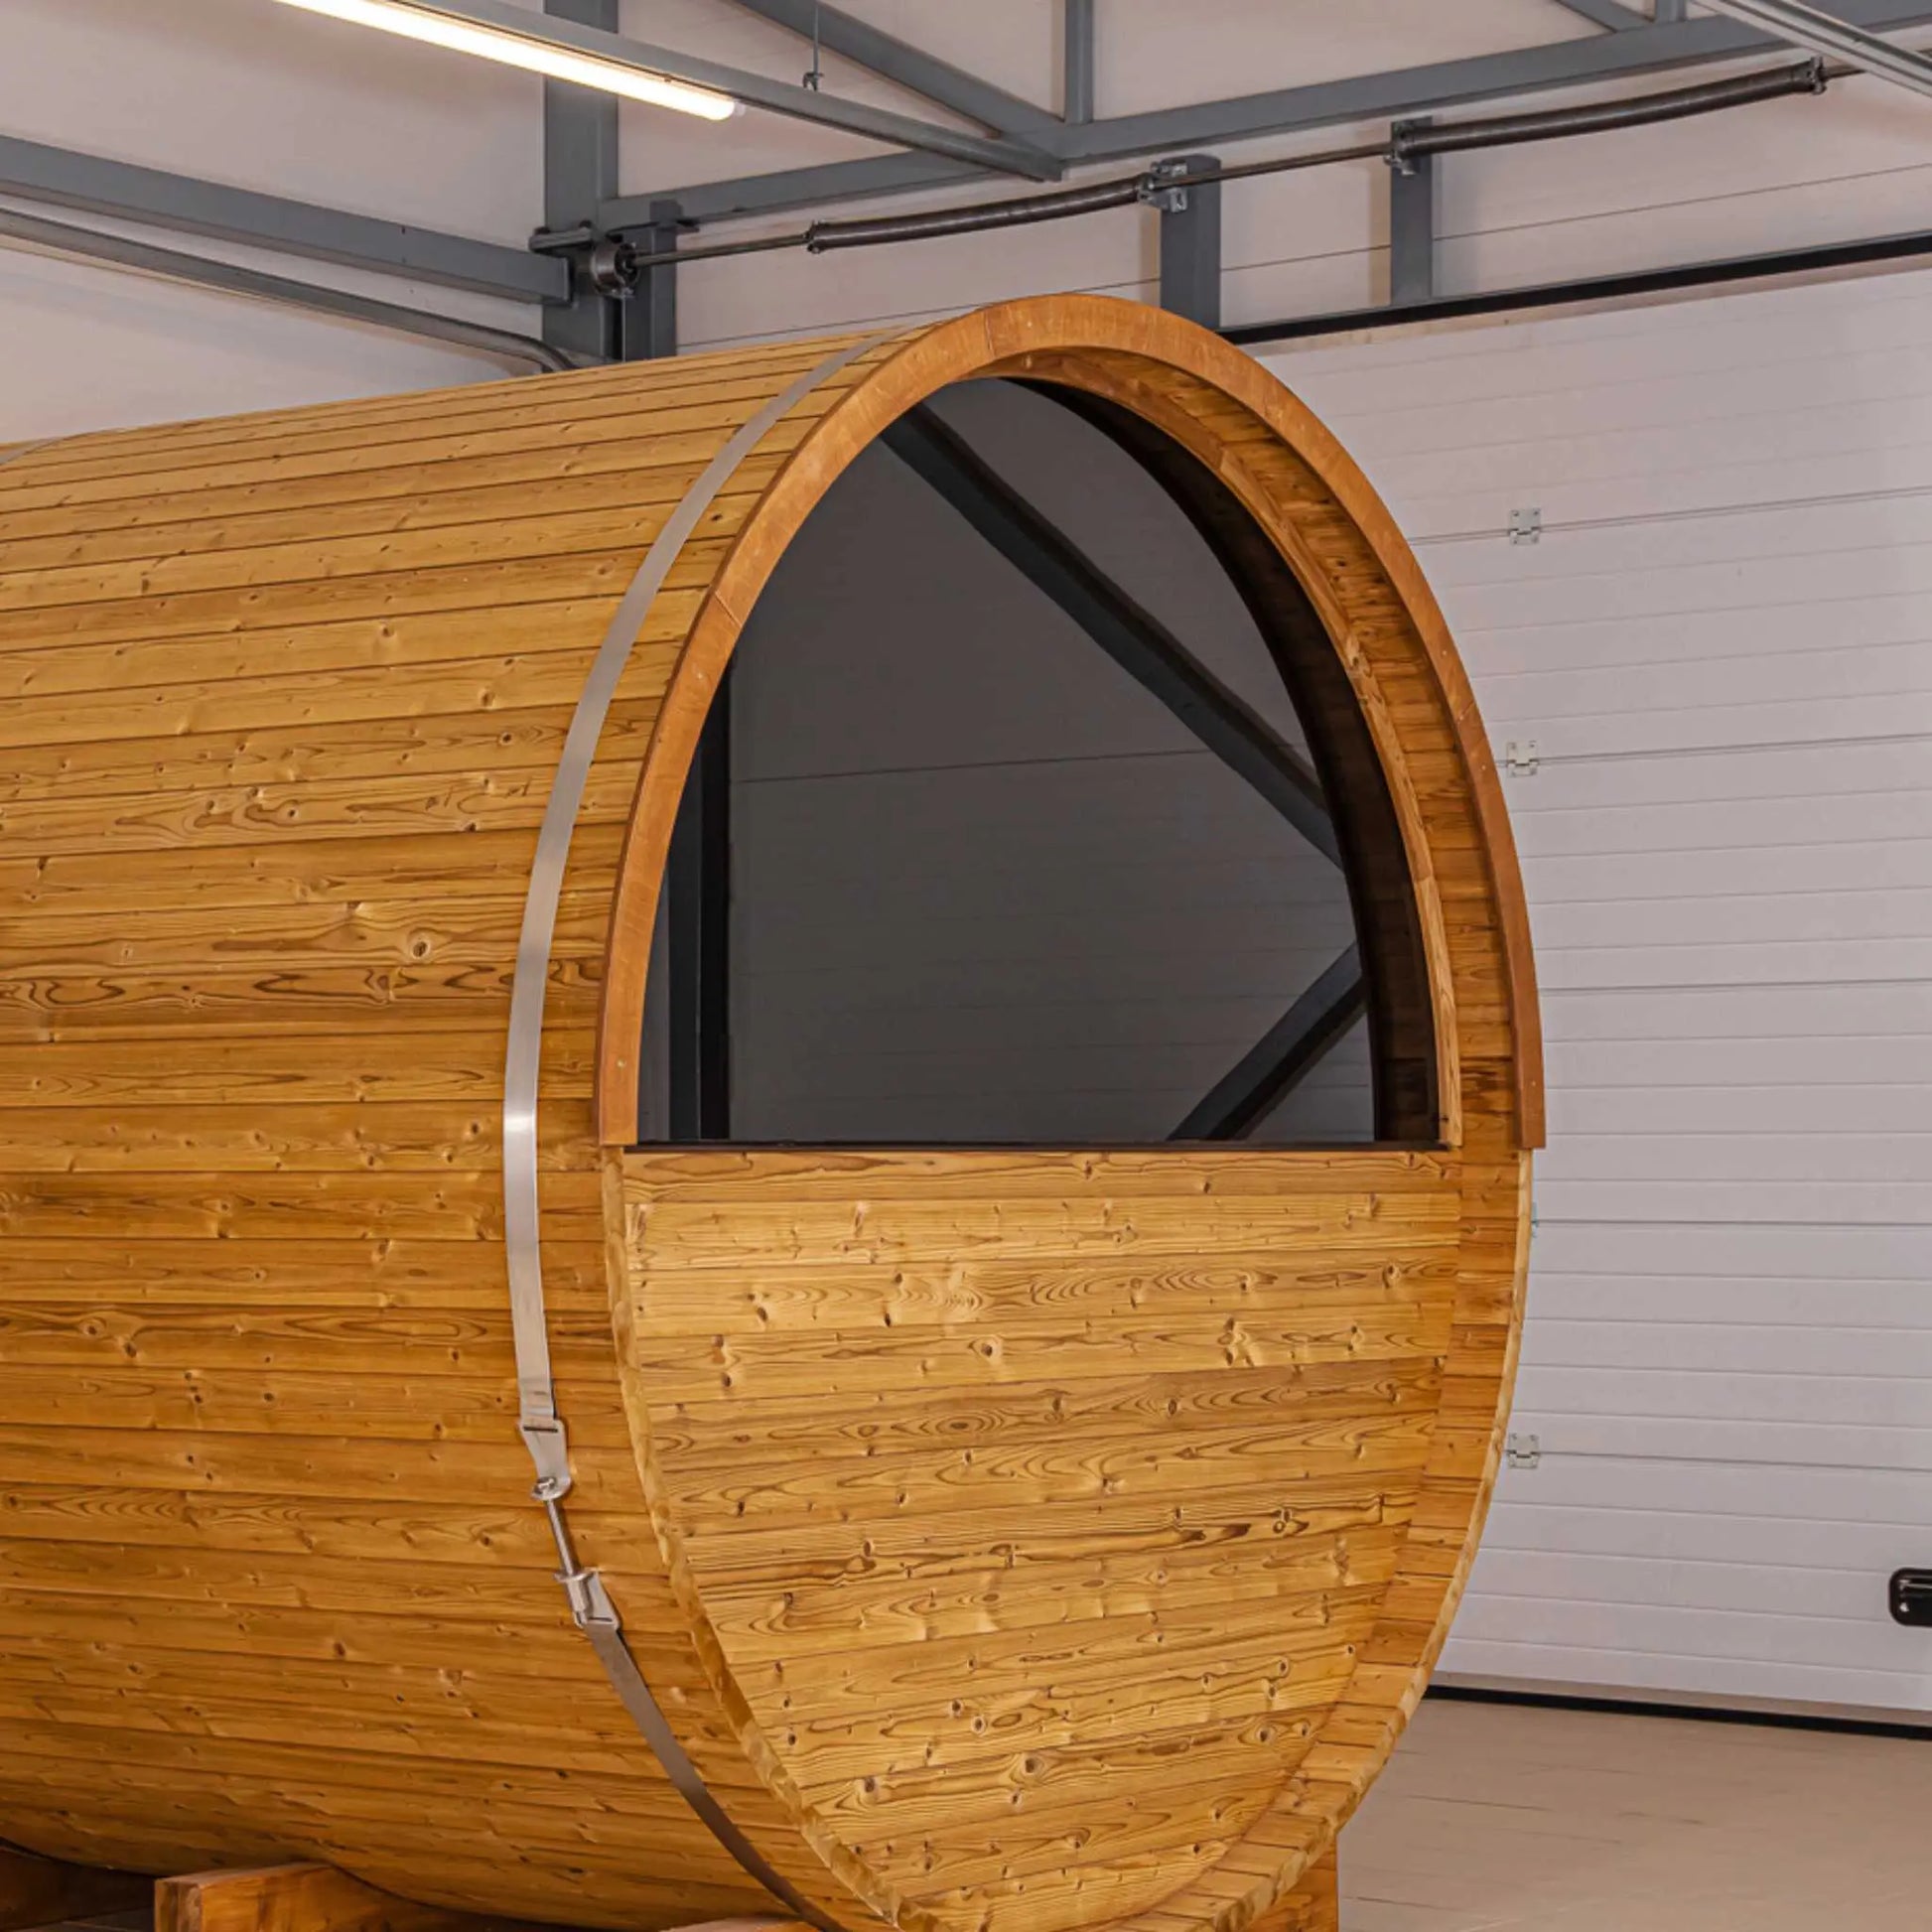 Thermo Wood Barrel Sauna - Regular (L: 223 & ø: 225 cm) Finnmark Sauna Barrel Sauna | Finnmark Sauna